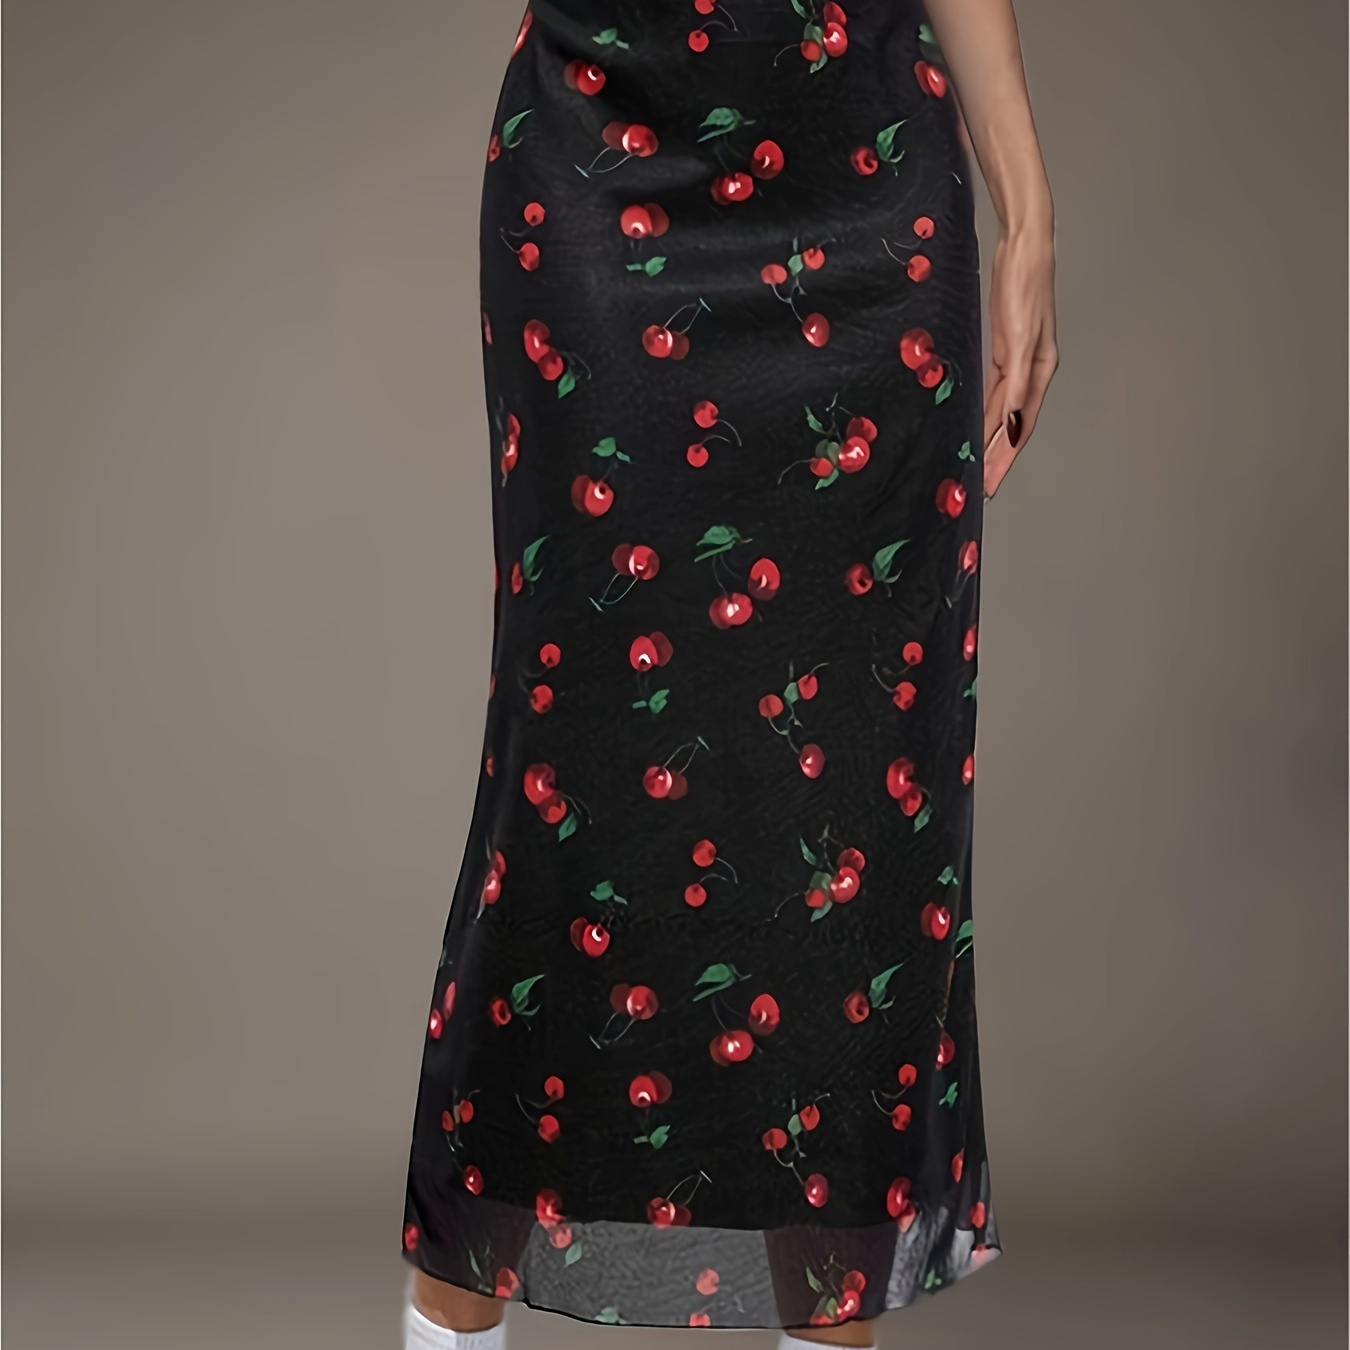 

Cherry Print High Waist Skirt, Elegant Skirt For Spring & Summer, Women's Clothing